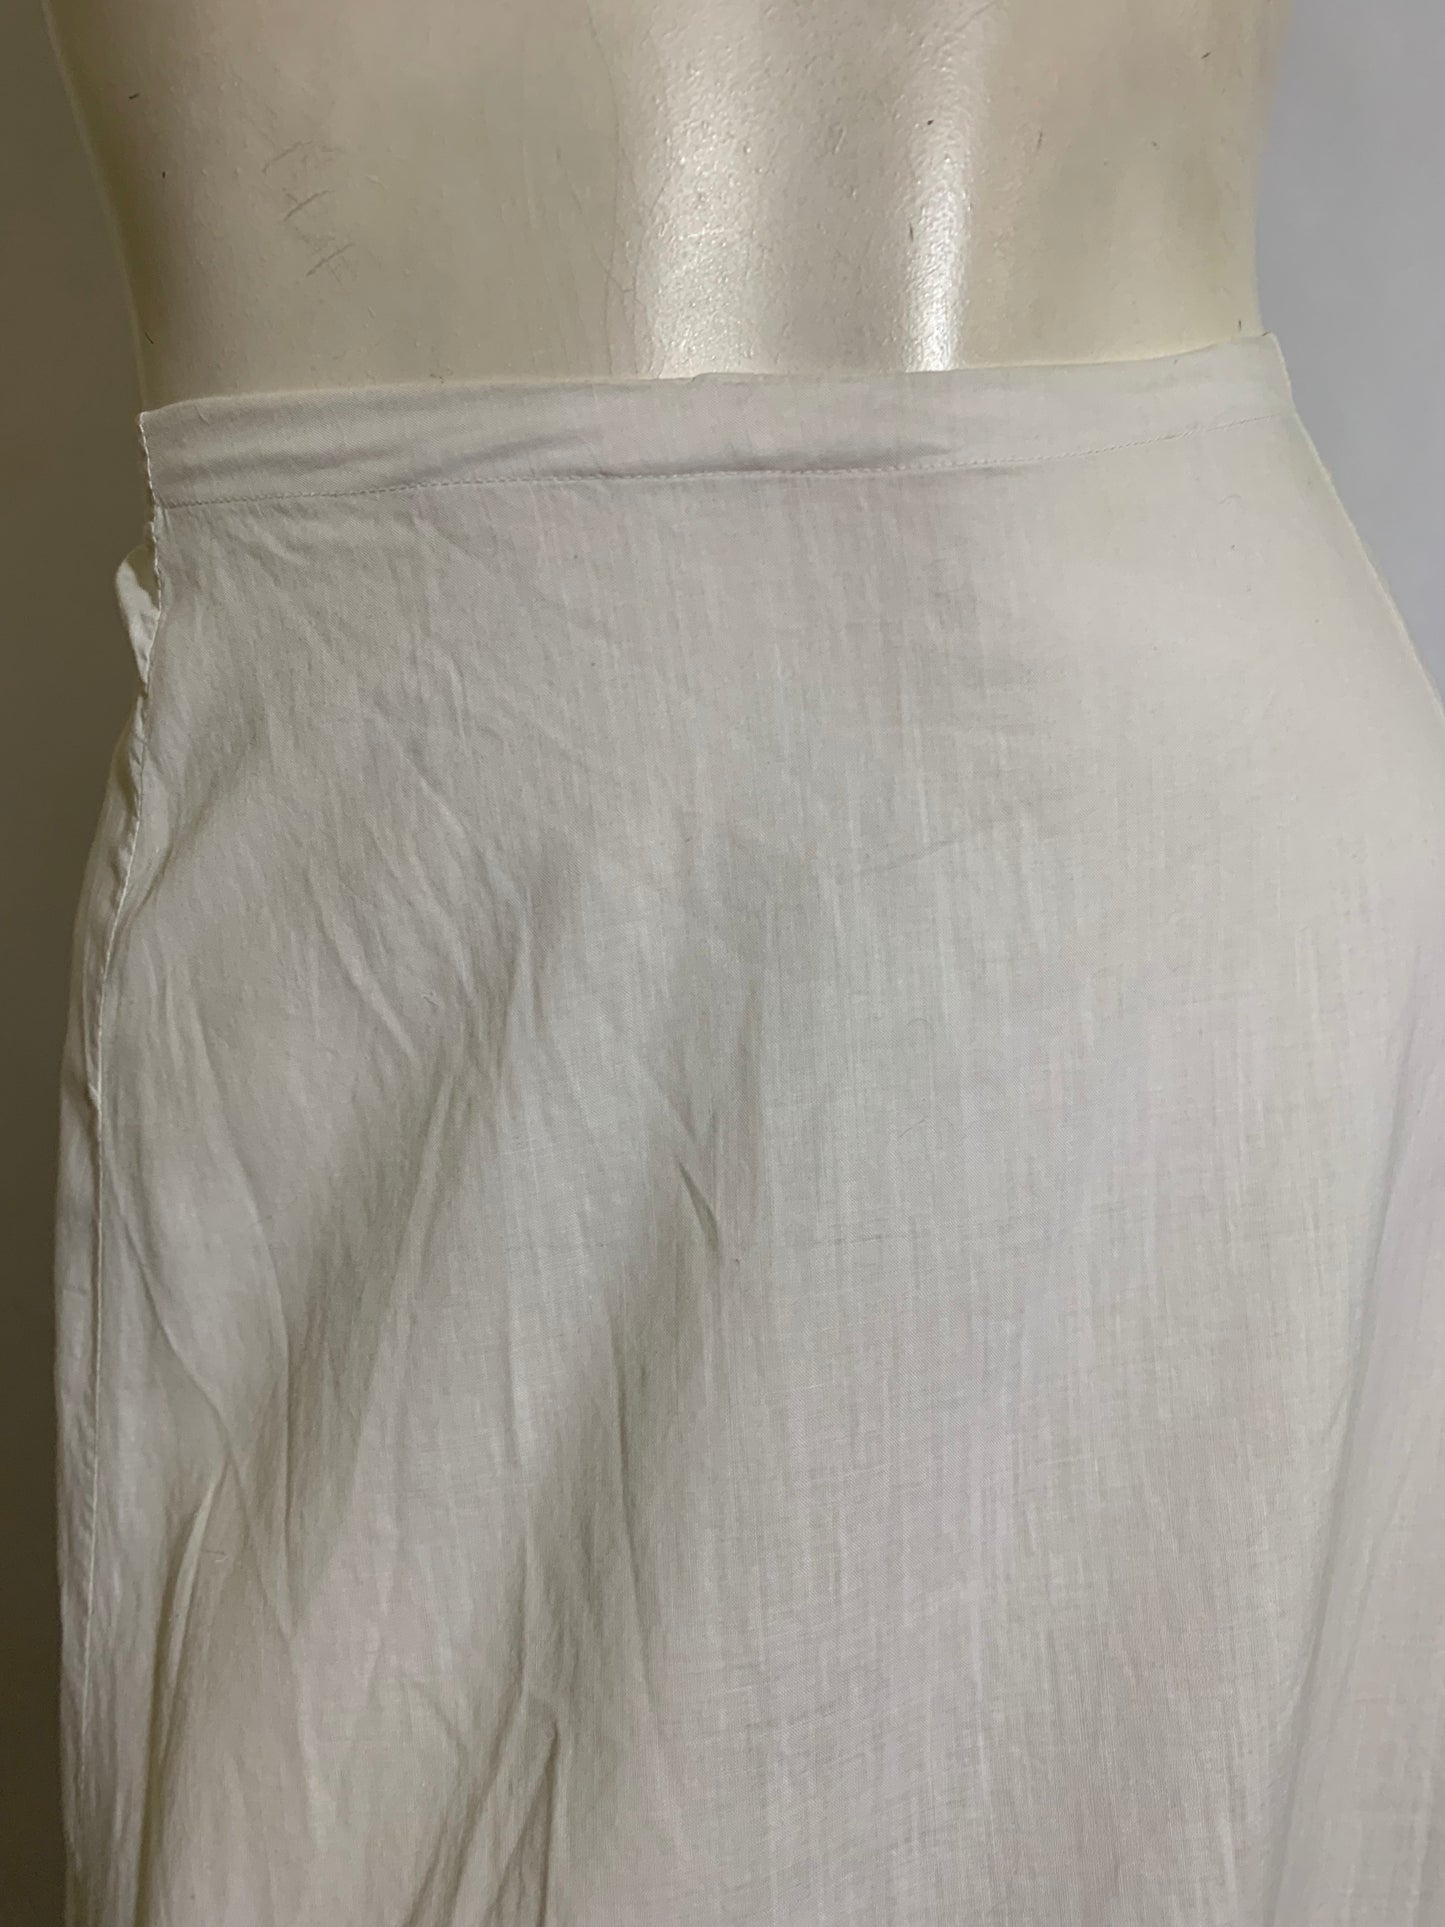 Embroidered and Lace Trimmed White Cotton Petticoat Half Slip circa 1910s